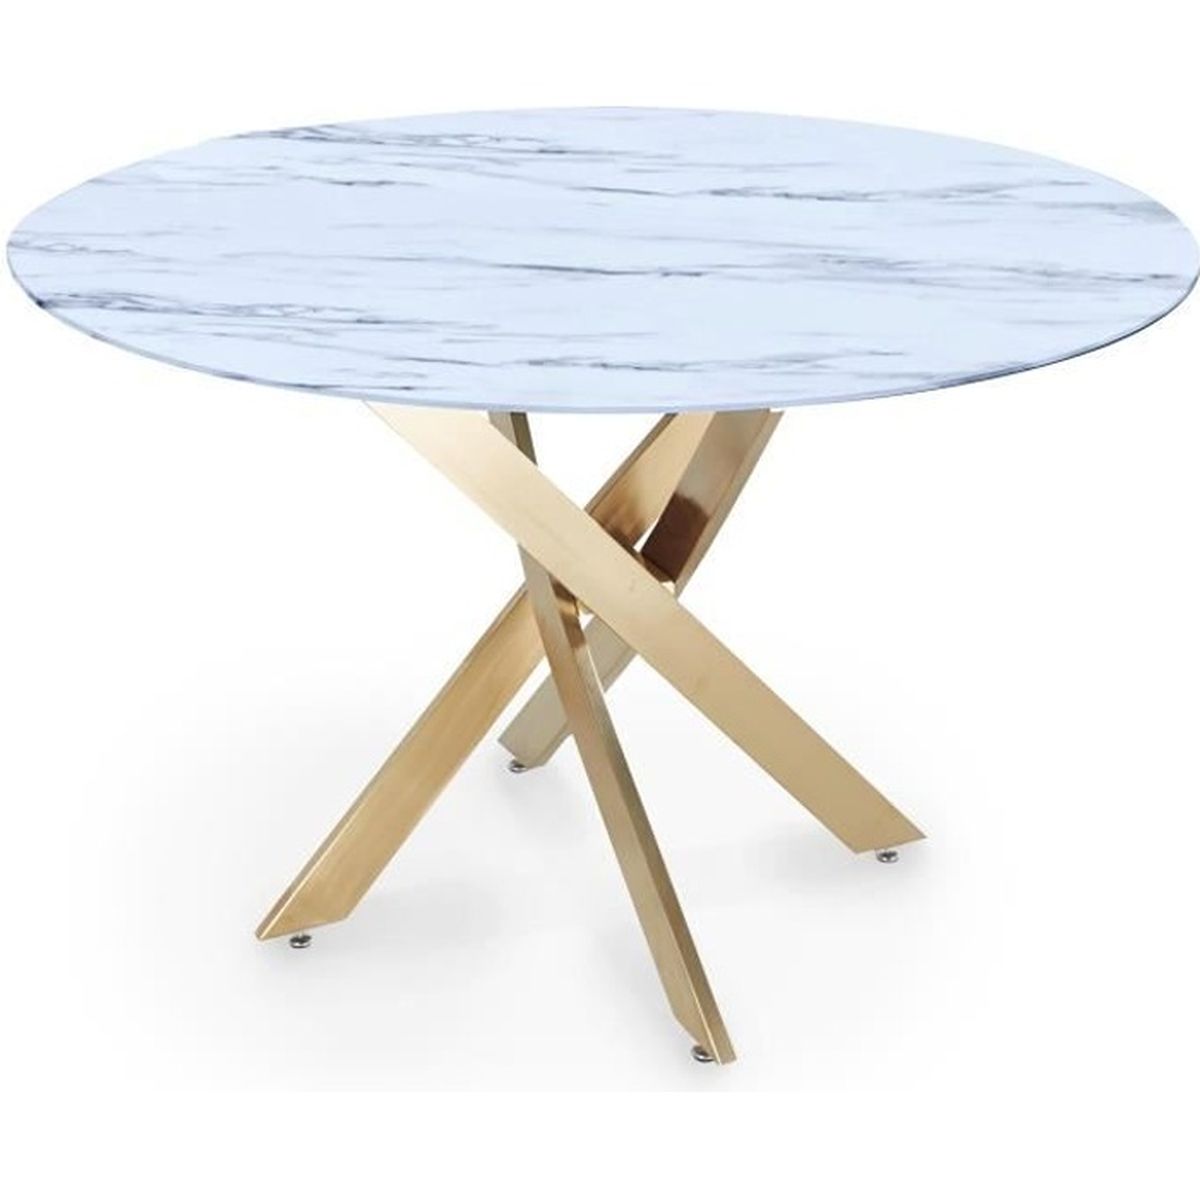 Table design -